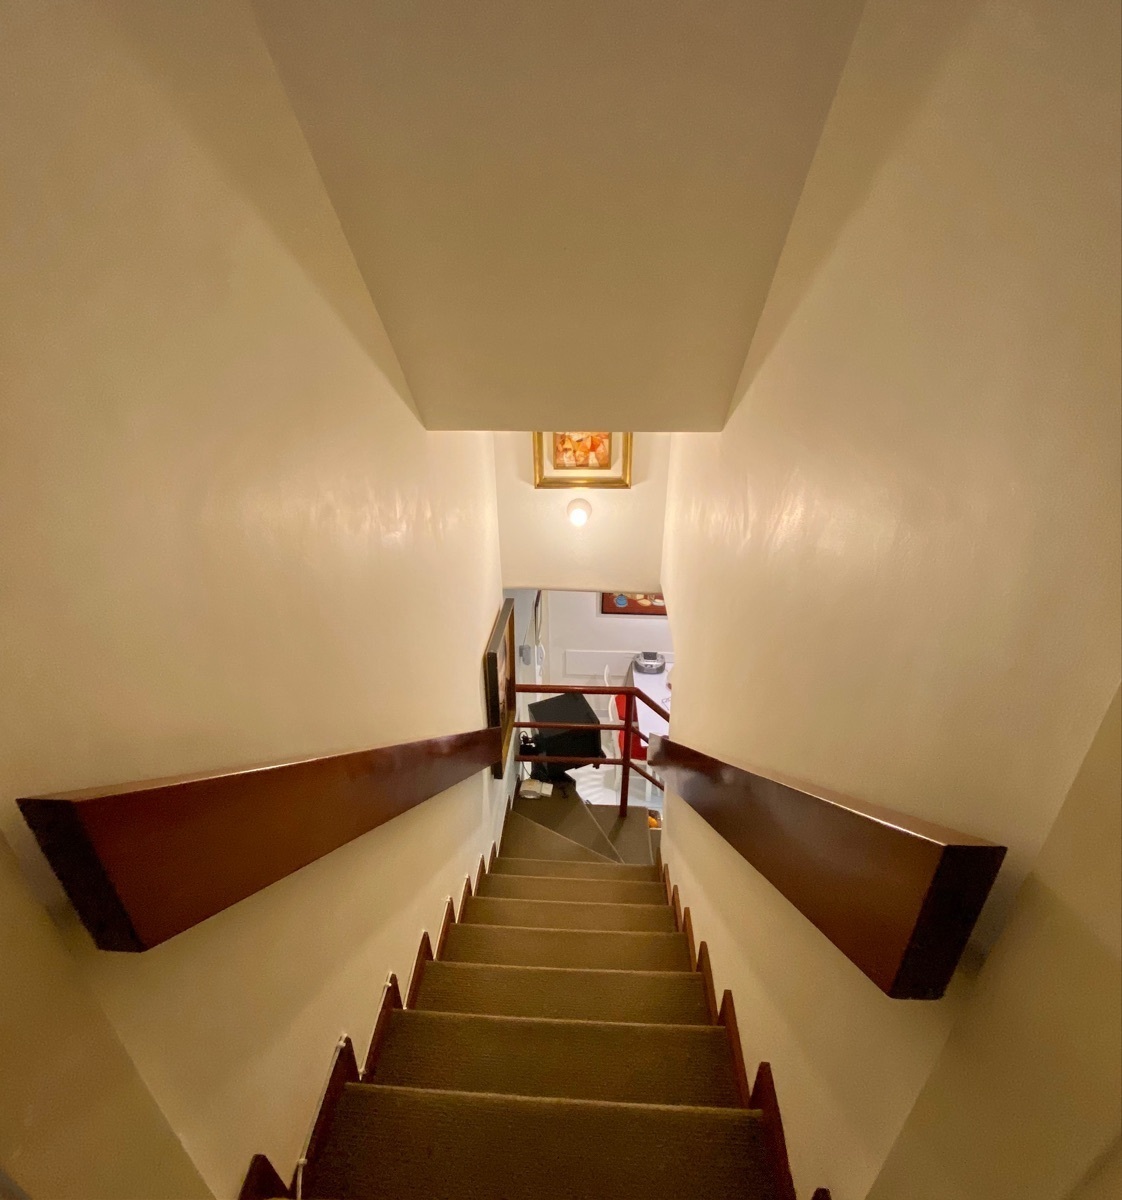 30 de 46: Escaleras acceso directo de zona familiar a cocina